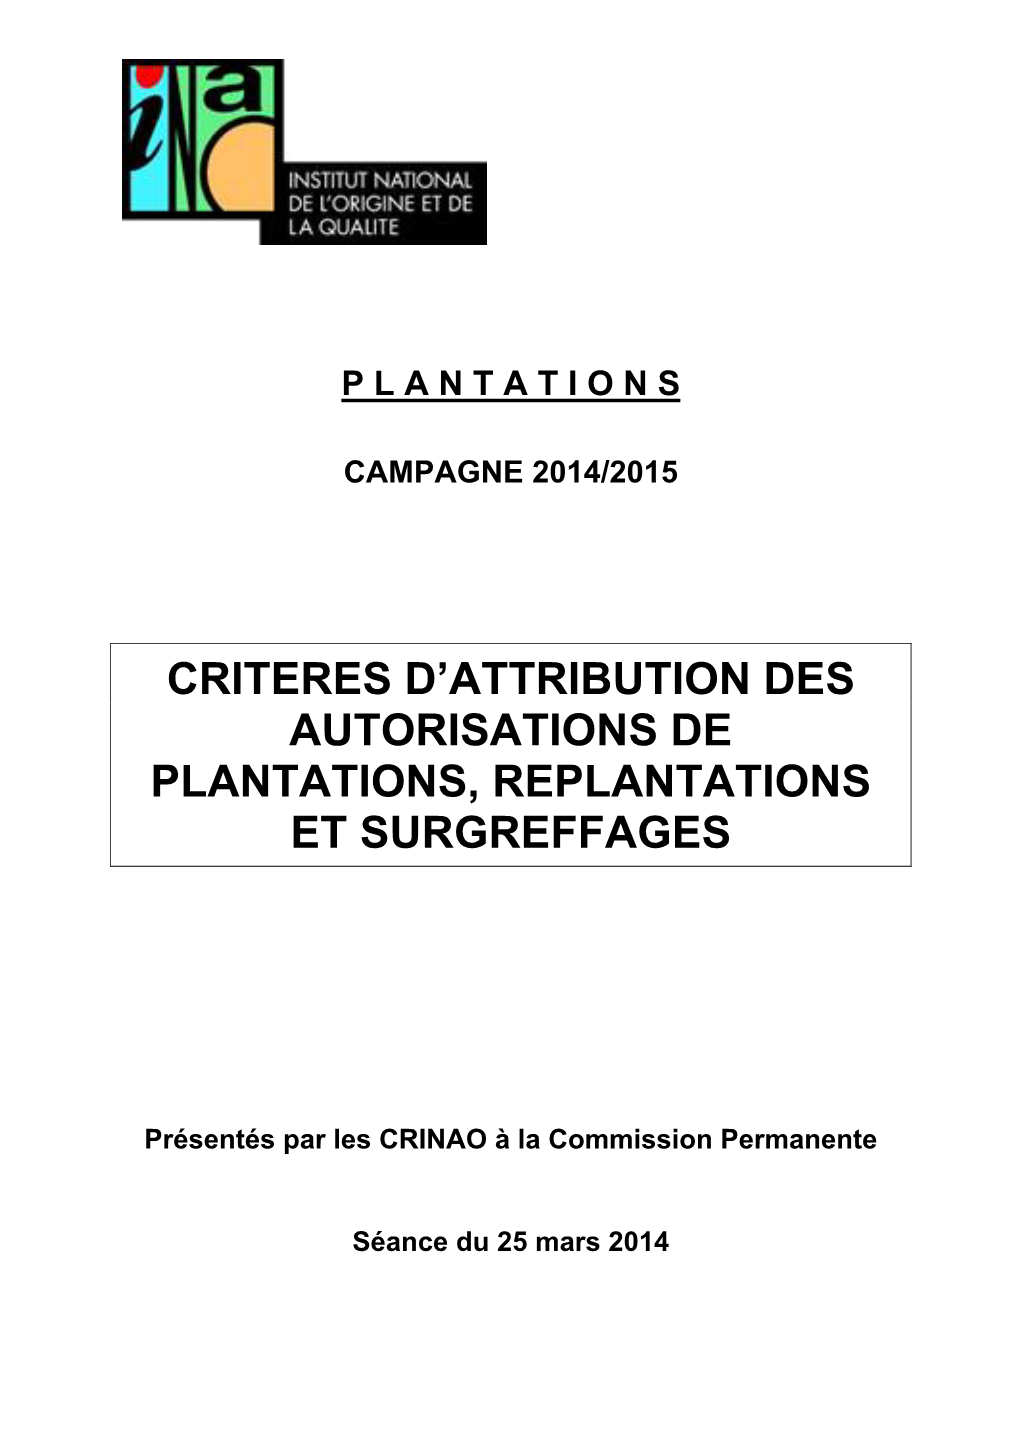 Criteres D'attribution Des Autorisations De Plantations, Replantations Et Surgreffages